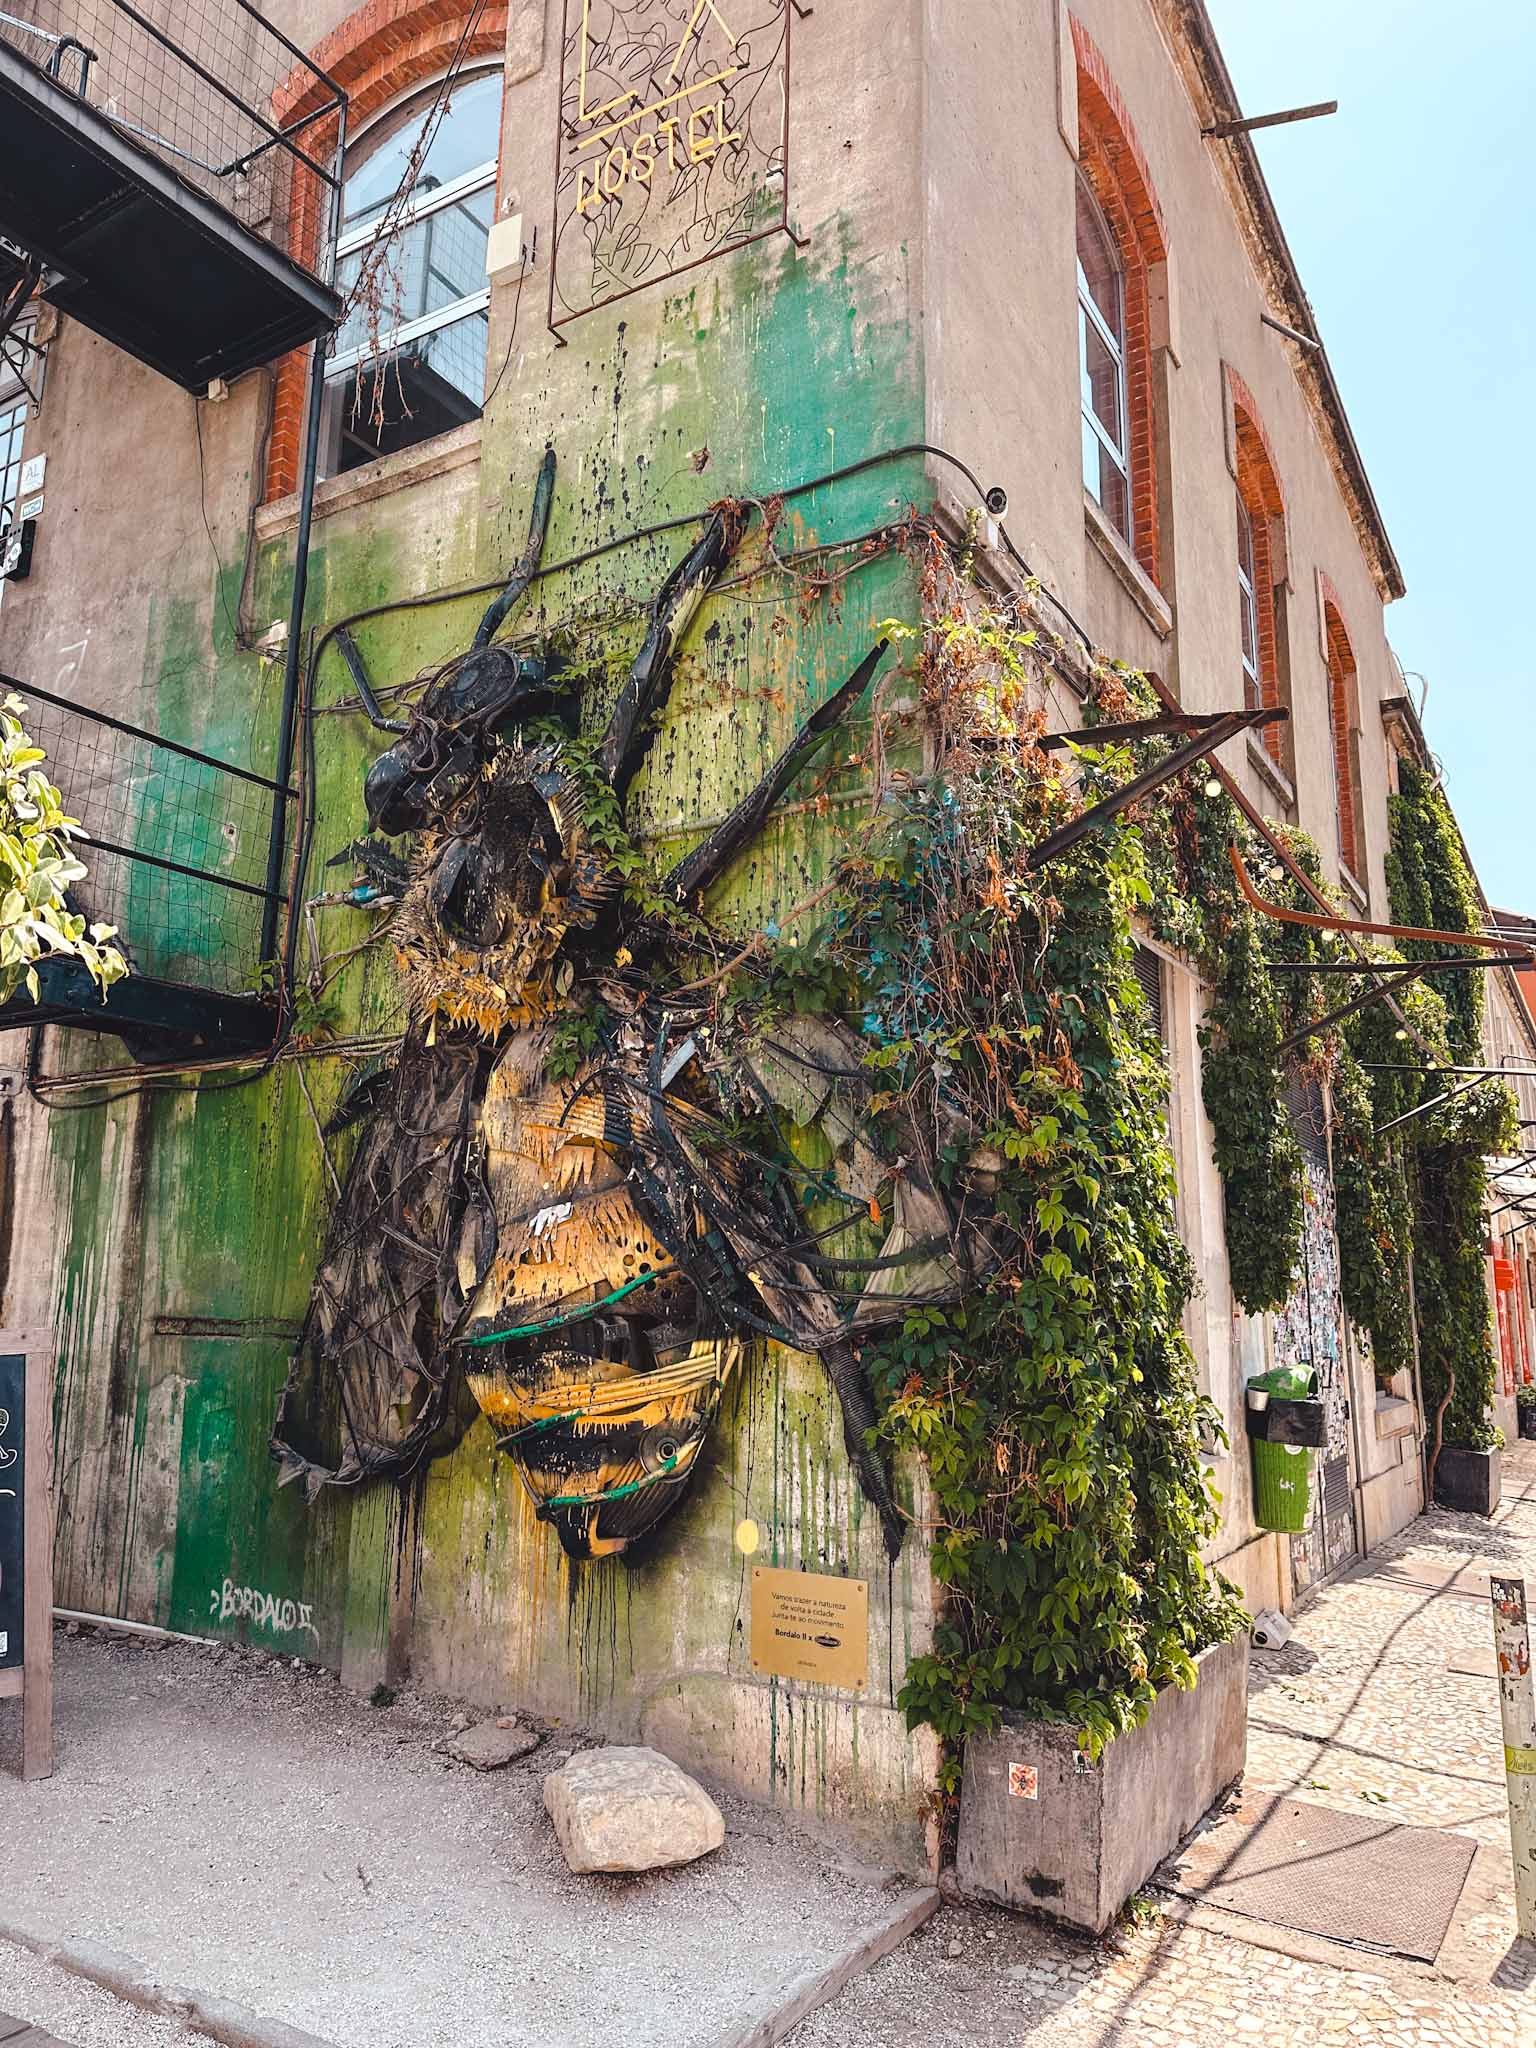 Best Instagram photo spots in Lisbon, Portugal - Street Art by Bordalo II - Bumblebee